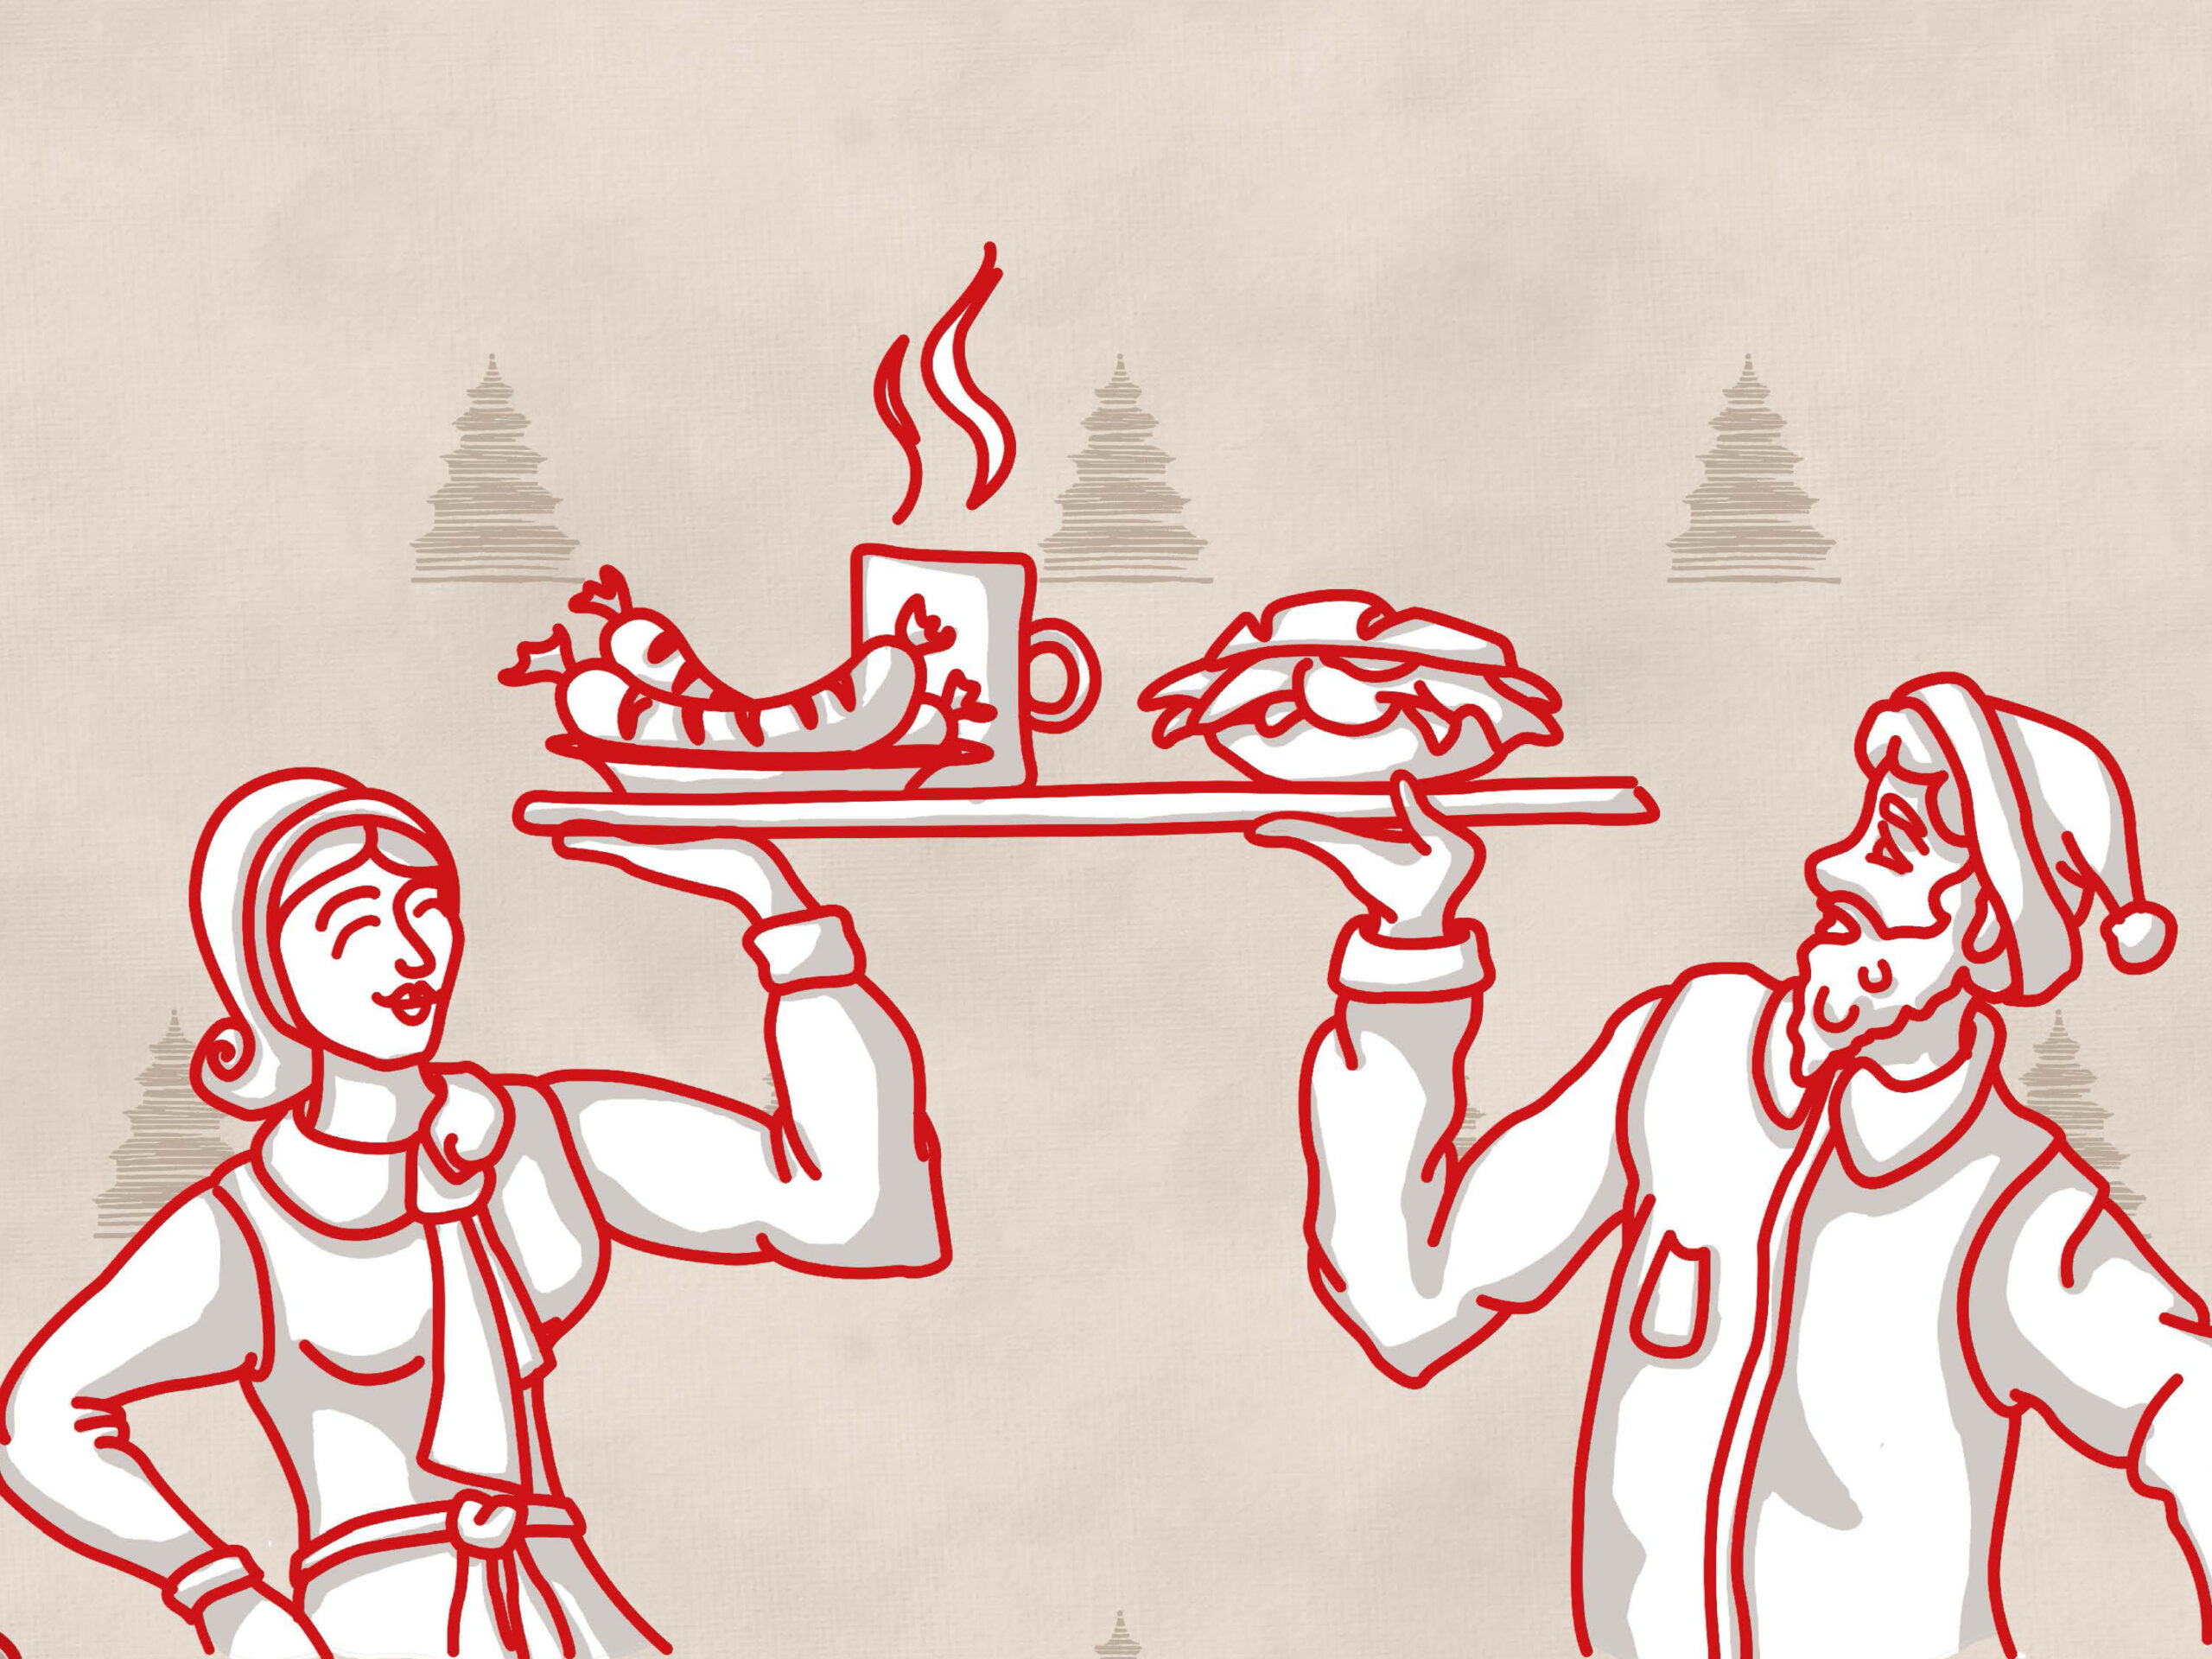 Kachelbild für das Corporate Design der Weihnachtsochsenbraterei München. Eine Illustration einer Frau und eines Mannes in Tracht und Weihnachtsmütze und einem Tablett mit einer traditionellen Mahlzeit.